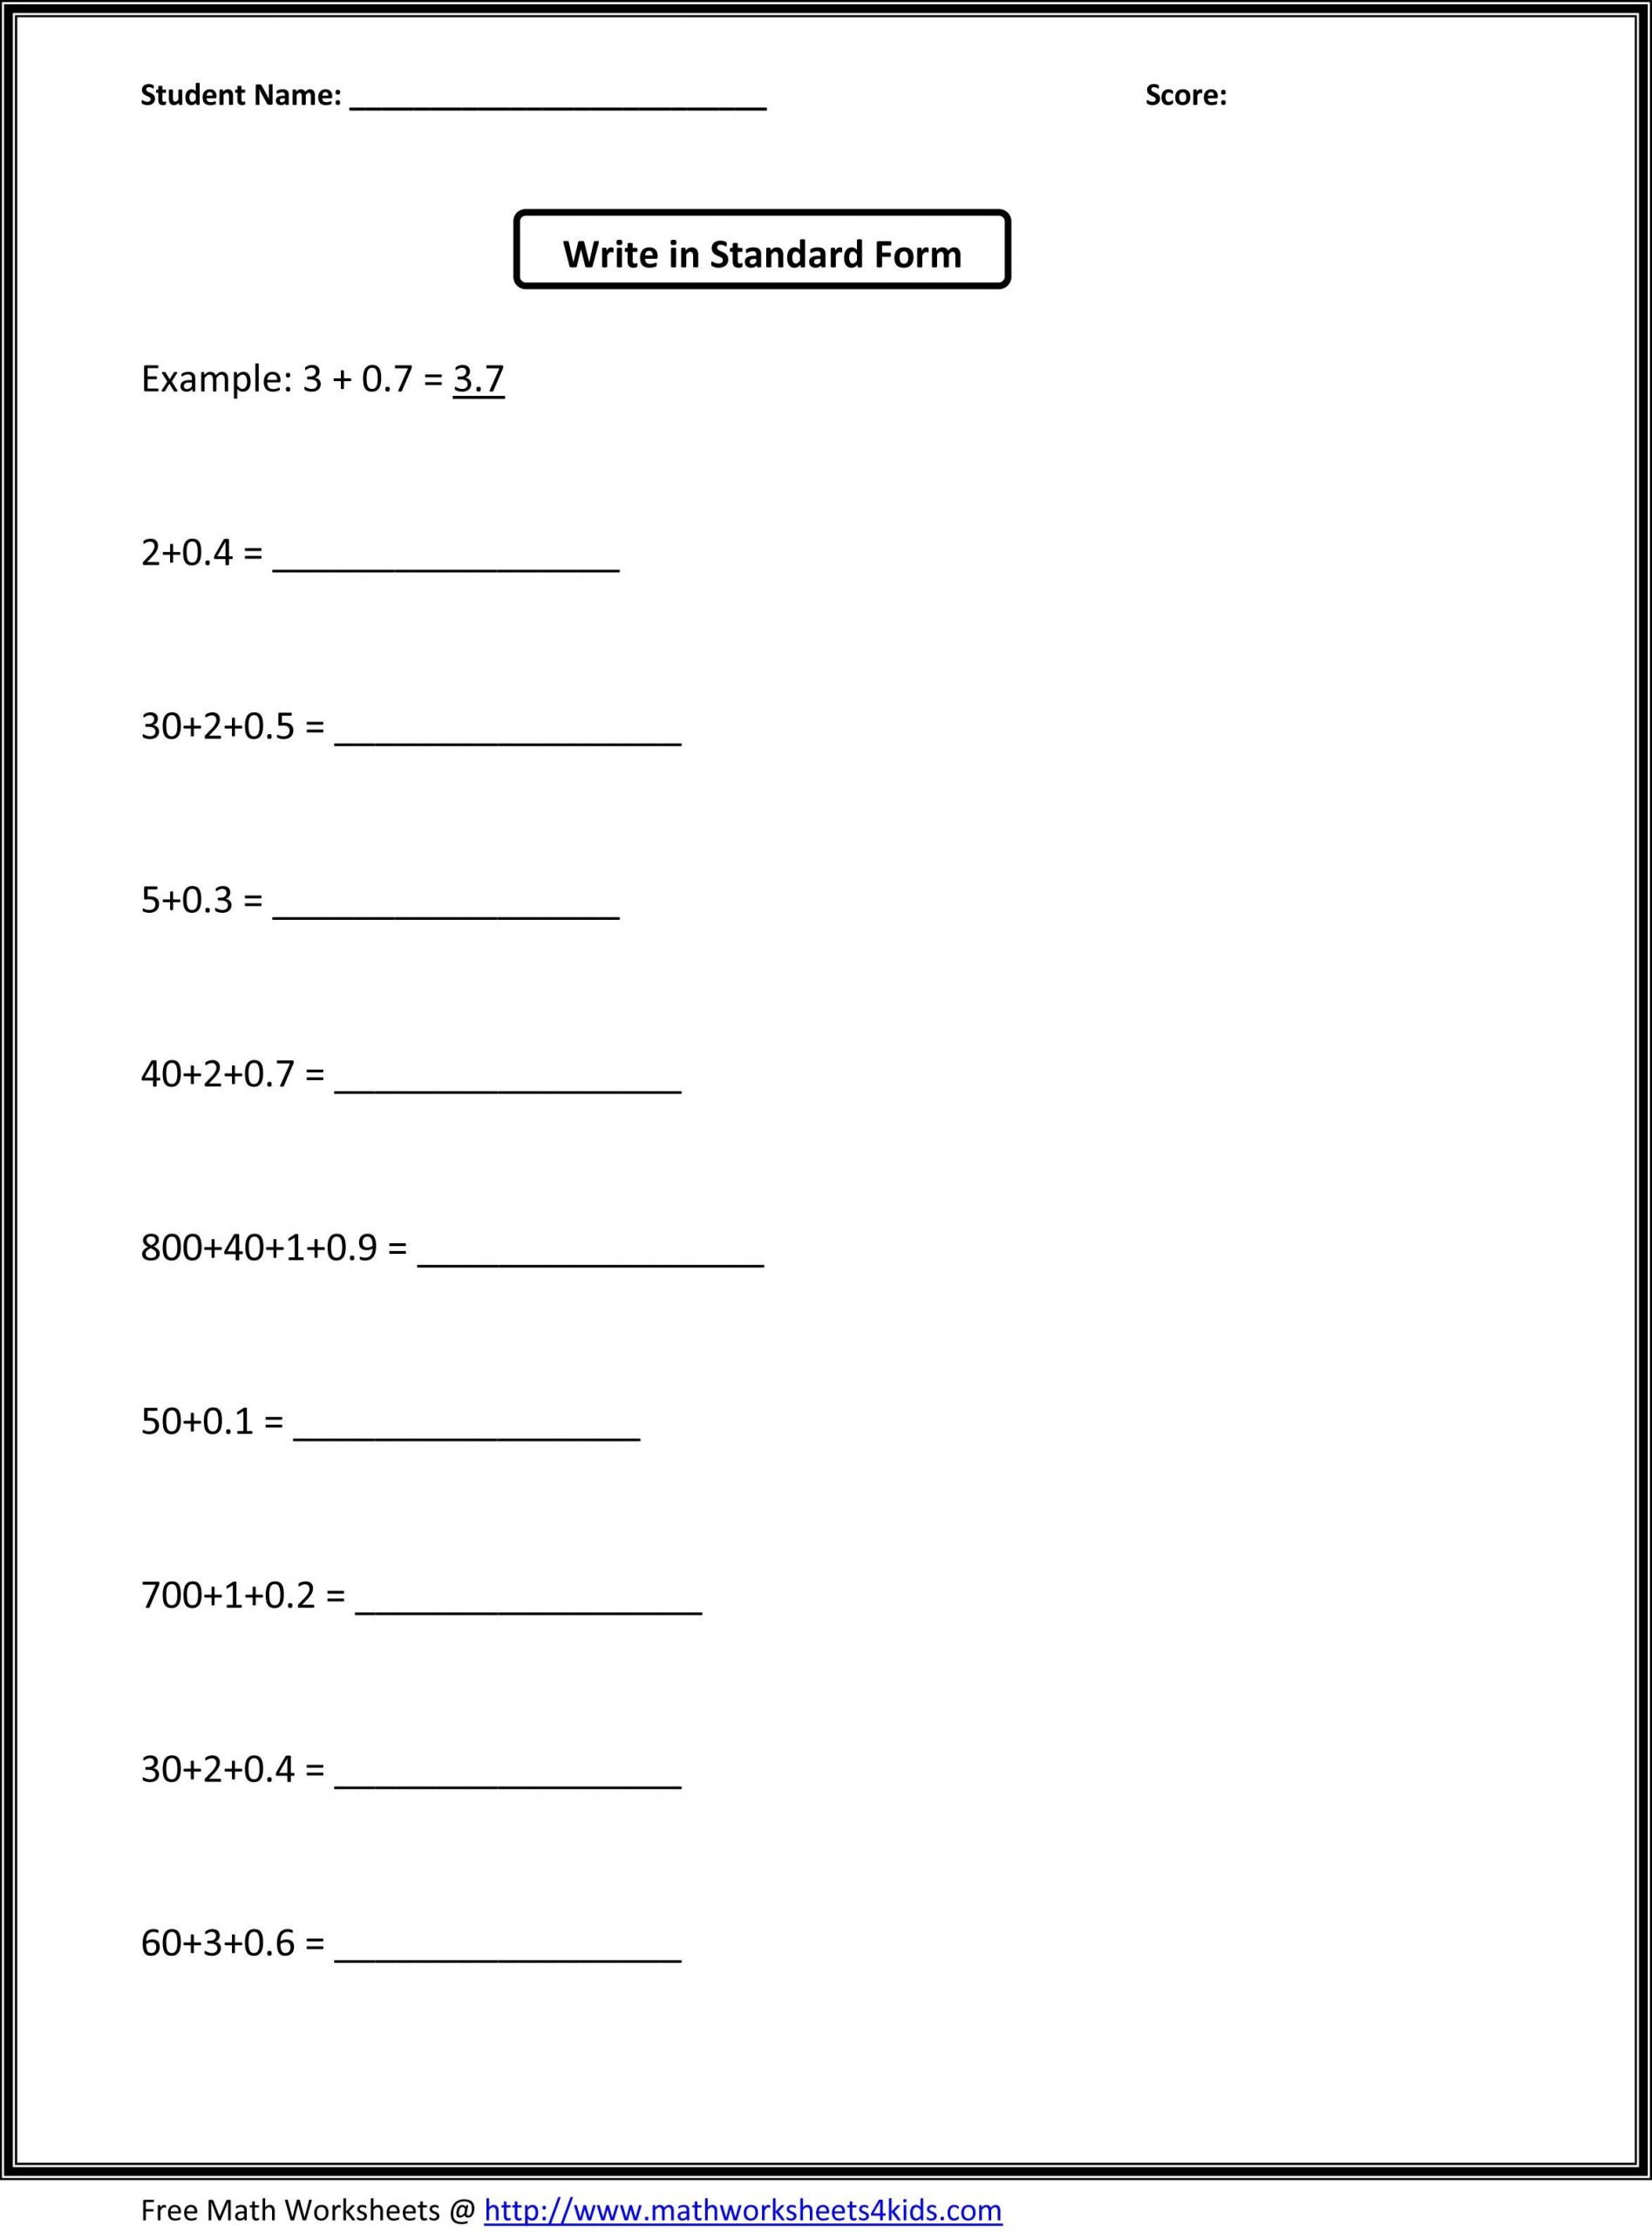 68 grade 3rd grade math worksheets 3rd grade worksheet geometry new free math worksheets for 3rd grade grade 3rd grade worksheet geometry new free math worksheets for 3rd